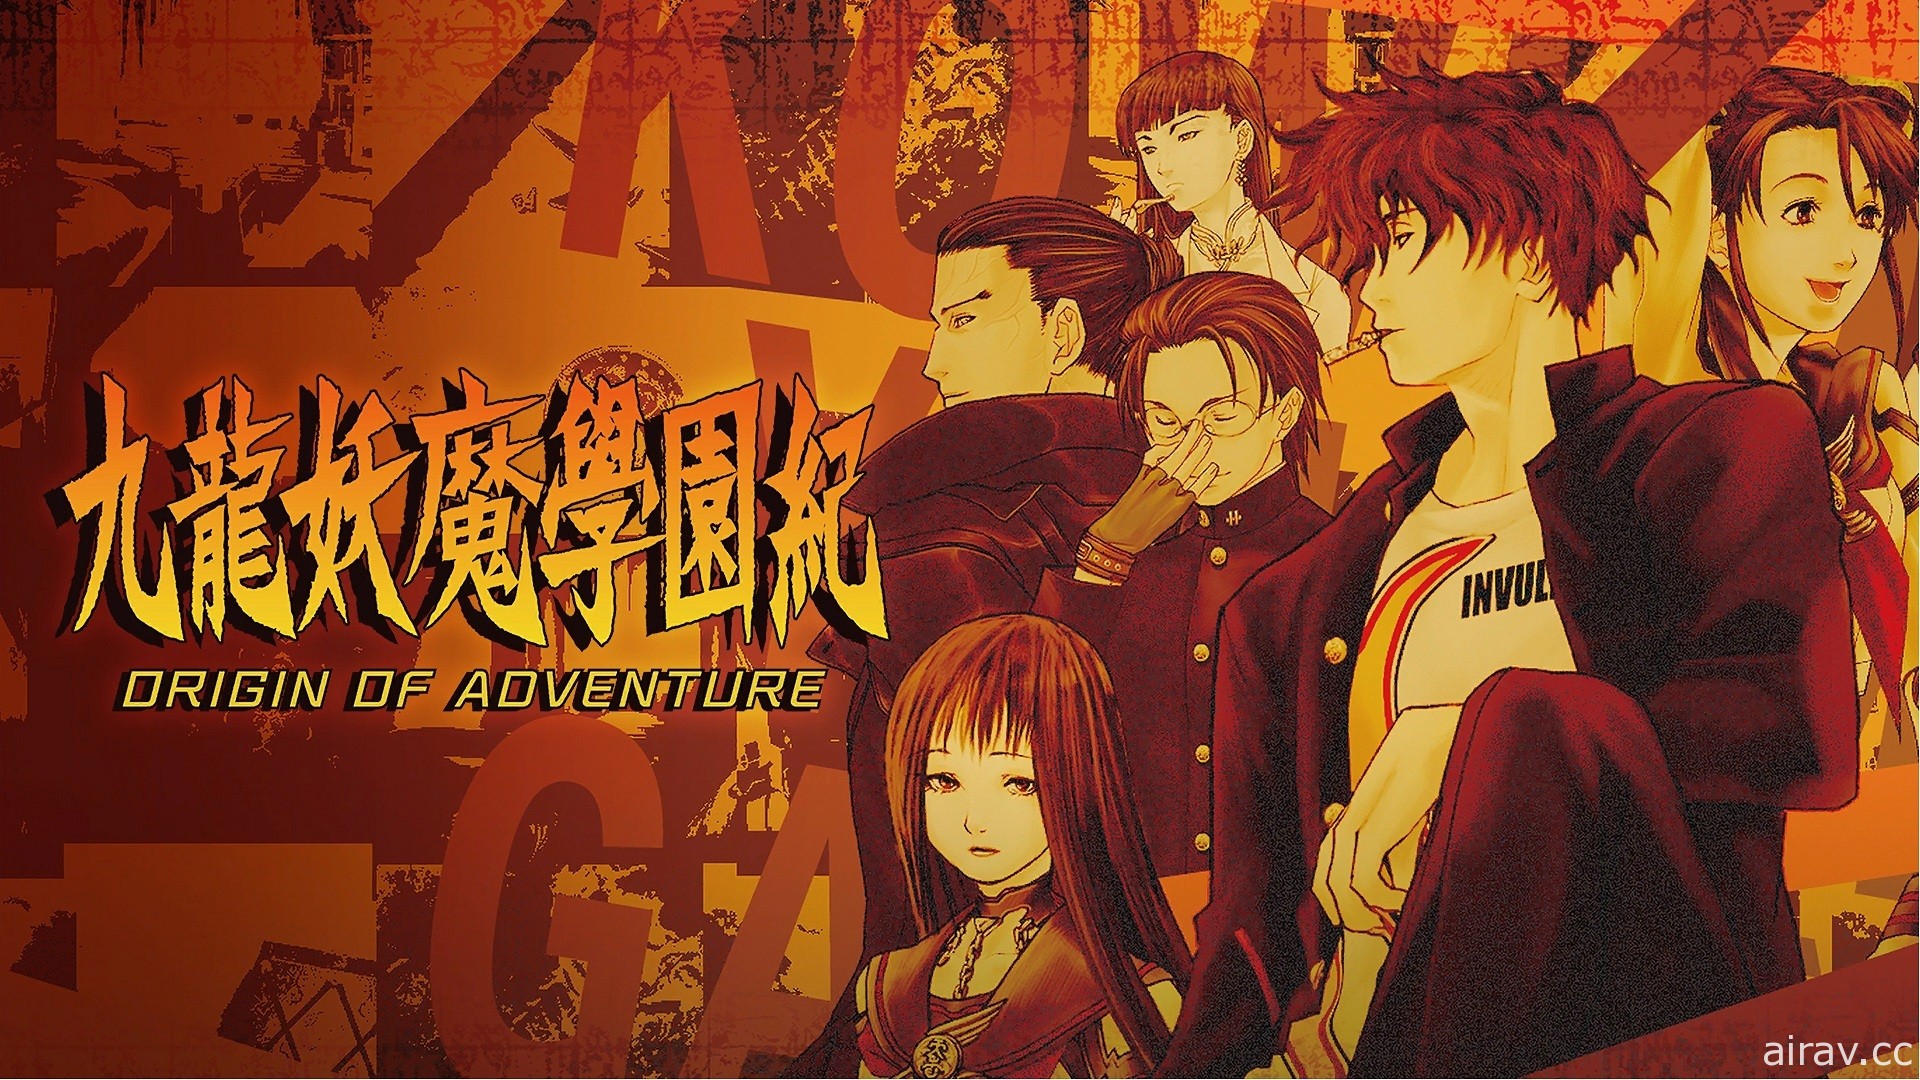 《九龍妖魔學園紀 ORIGIN OF ADVENTURE》PS4 中文數位下載版今日上市